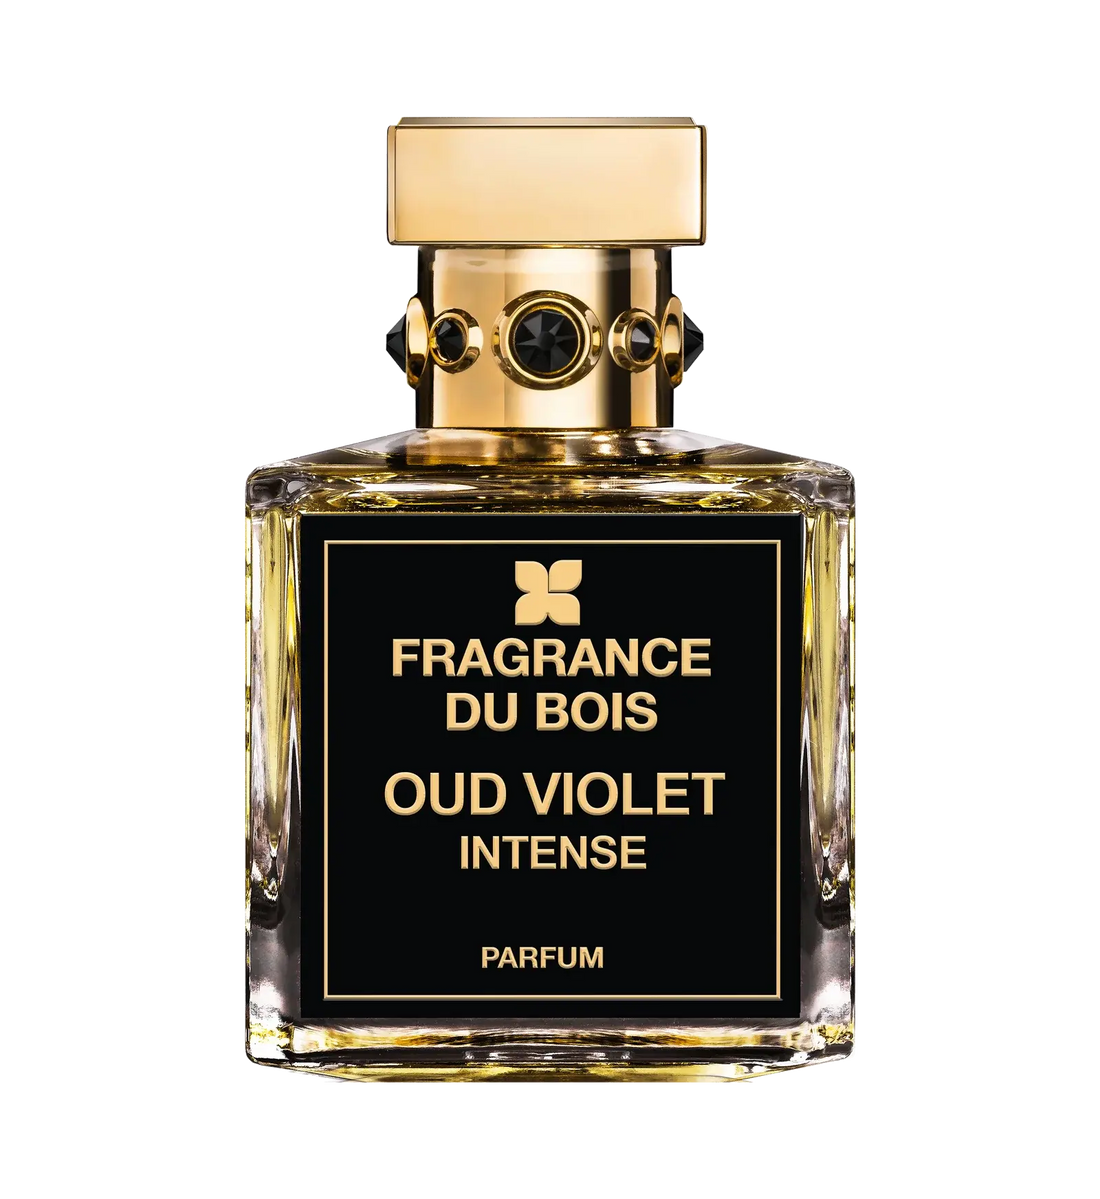 Fragrance du bois Fragrance du Bois Oud Violet Intense Edp – 50 ml